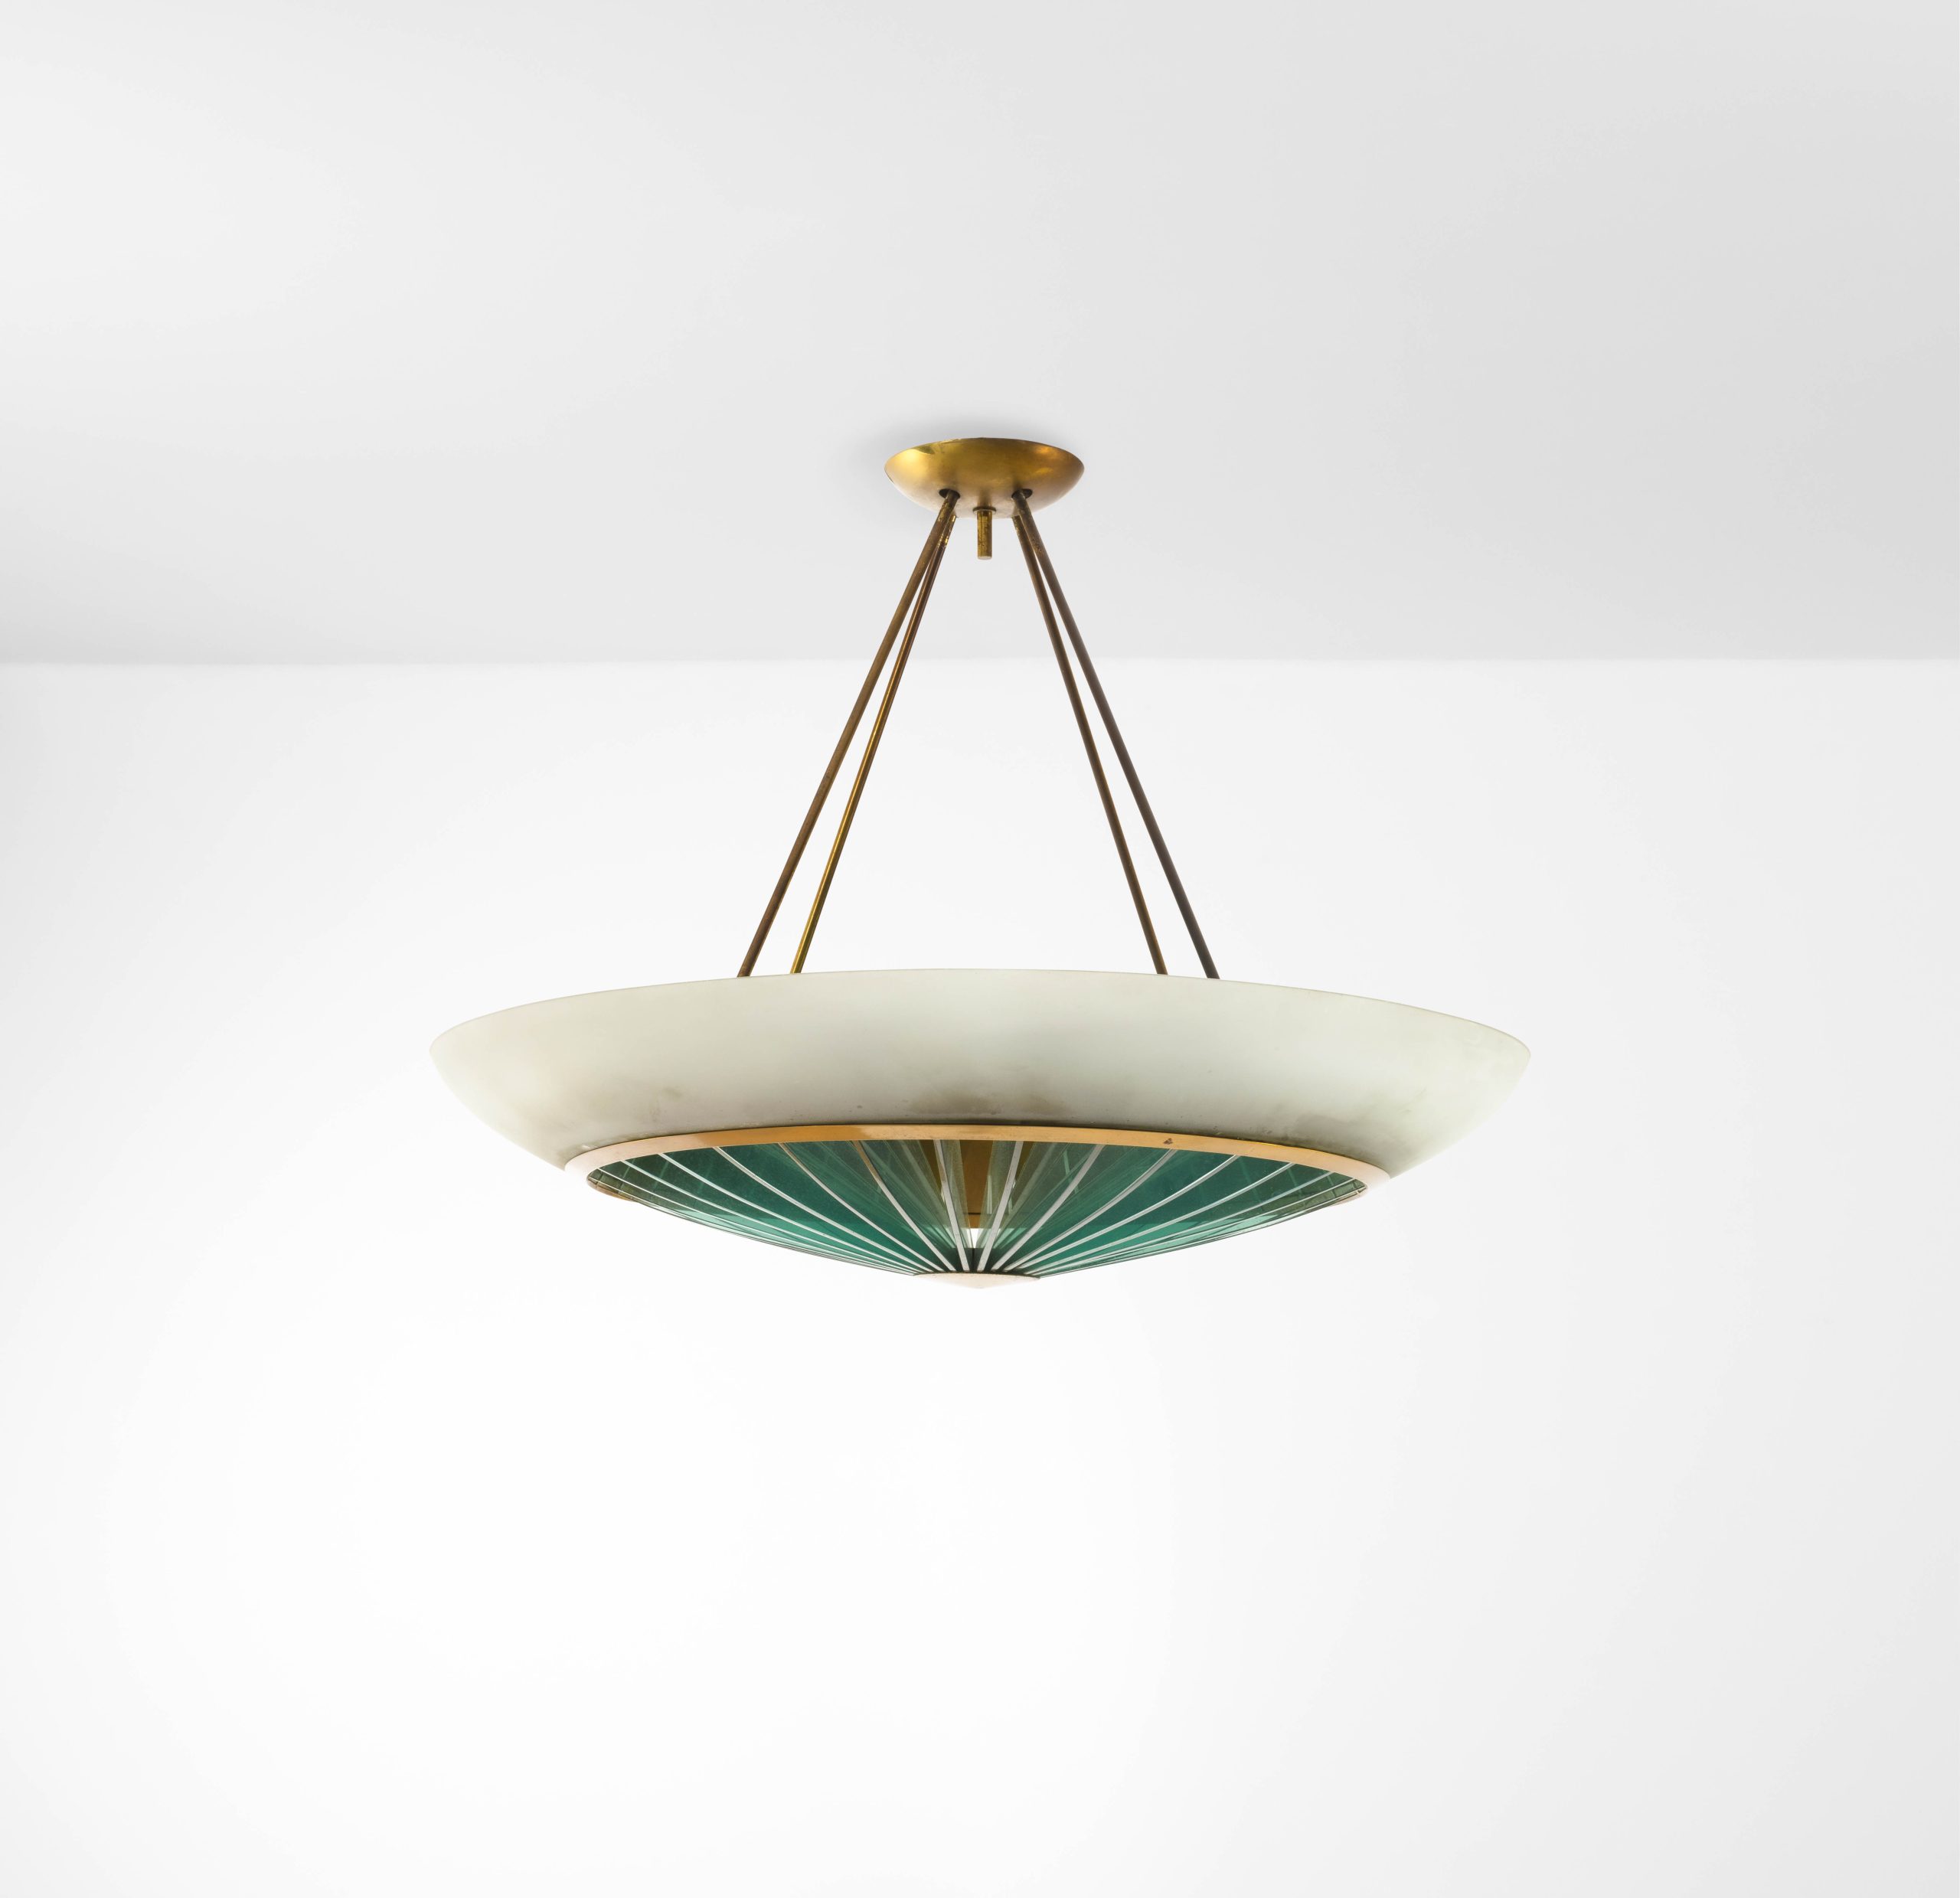 La lampada di Max Ingrand illumina Cambi: gli highlights dell’asta di Design a Milano